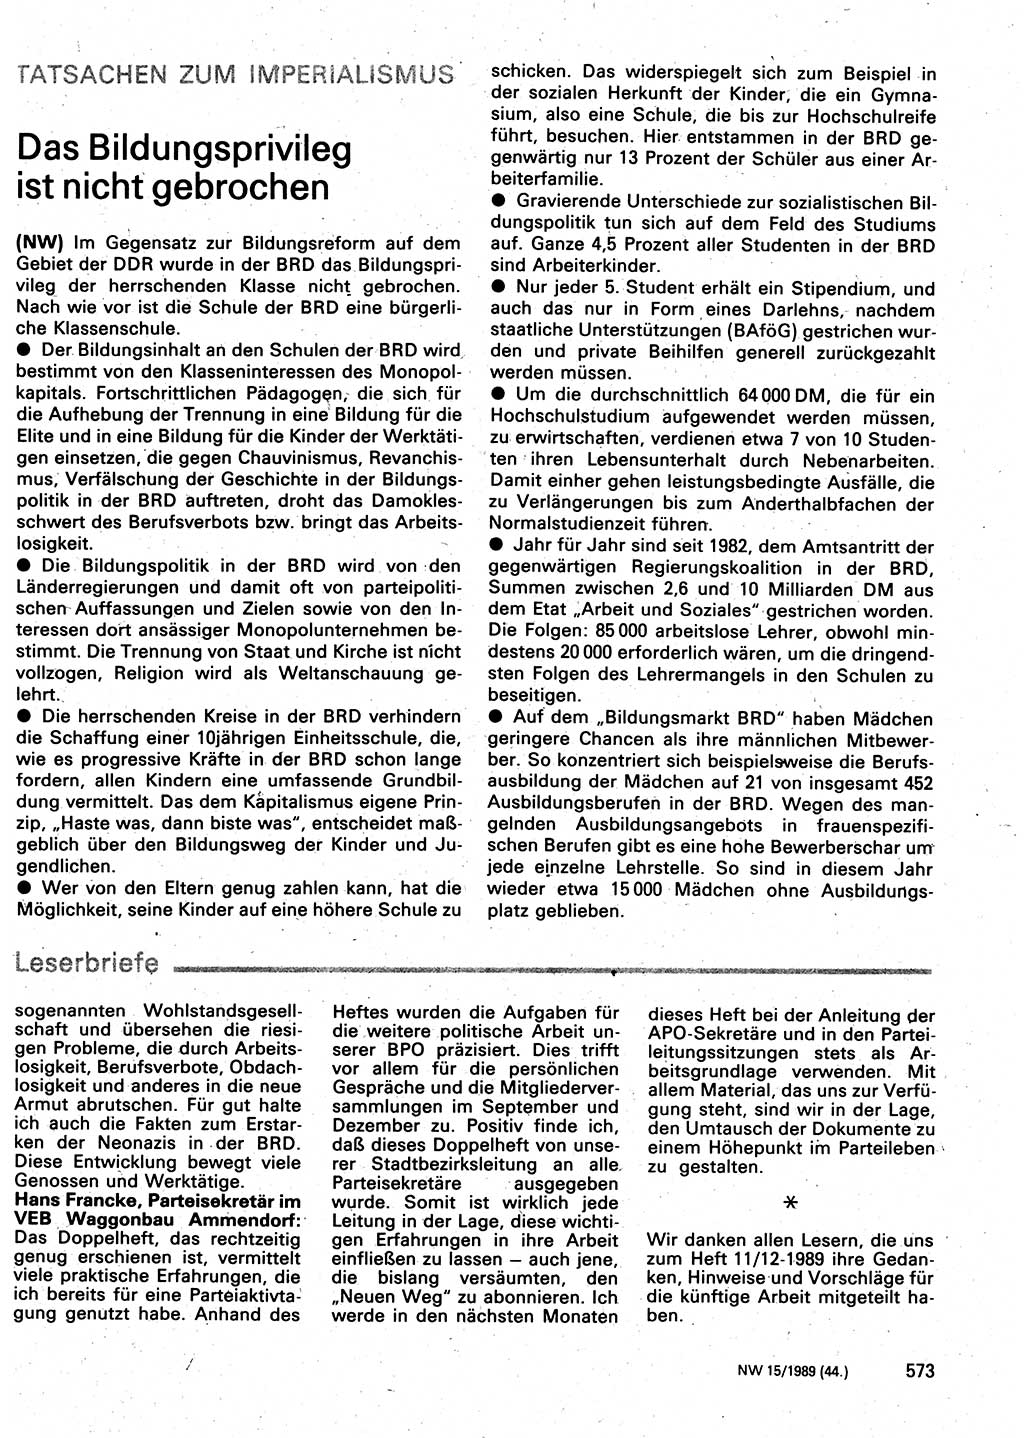 Neuer Weg (NW), Organ des Zentralkomitees (ZK) der SED (Sozialistische Einheitspartei Deutschlands) für Fragen des Parteilebens, 44. Jahrgang [Deutsche Demokratische Republik (DDR)] 1989, Seite 573 (NW ZK SED DDR 1989, S. 573)